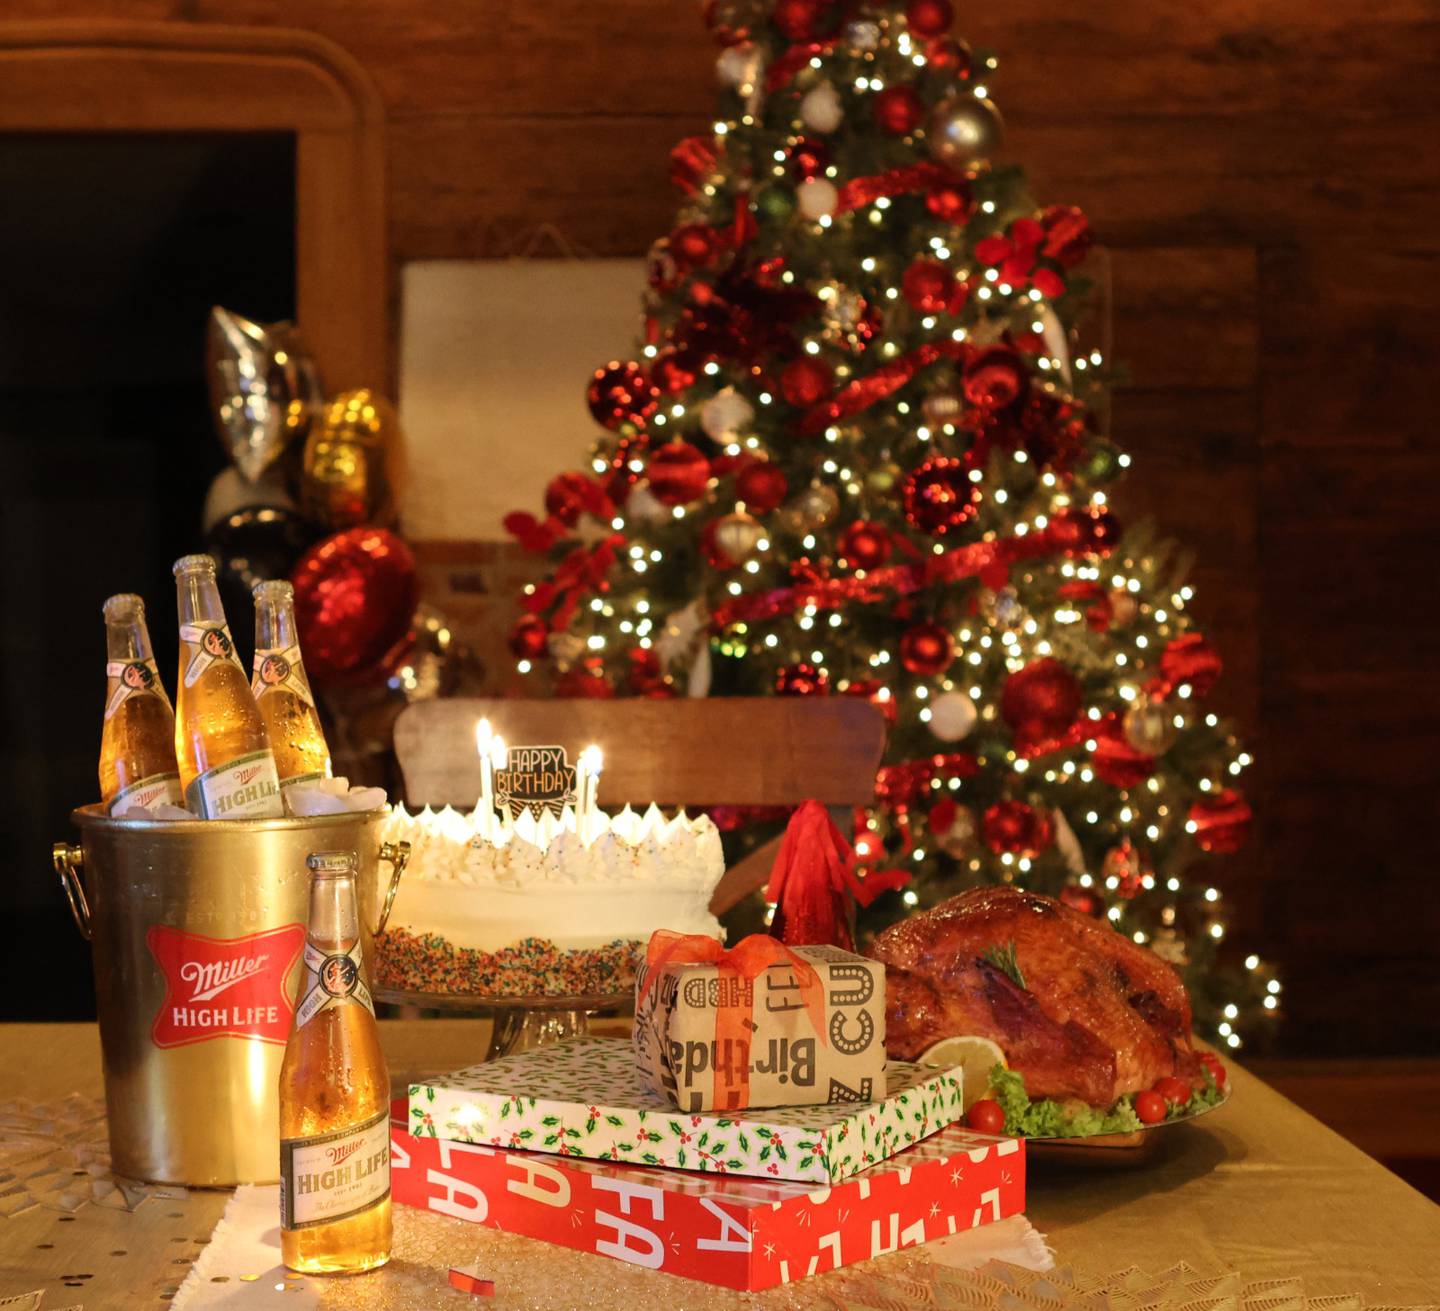 La Champagne de las cervezas busca a los cumpleaños de diciembre para que participen en una promoción en la que podrán ganar accesos a una fiesta exclusiva